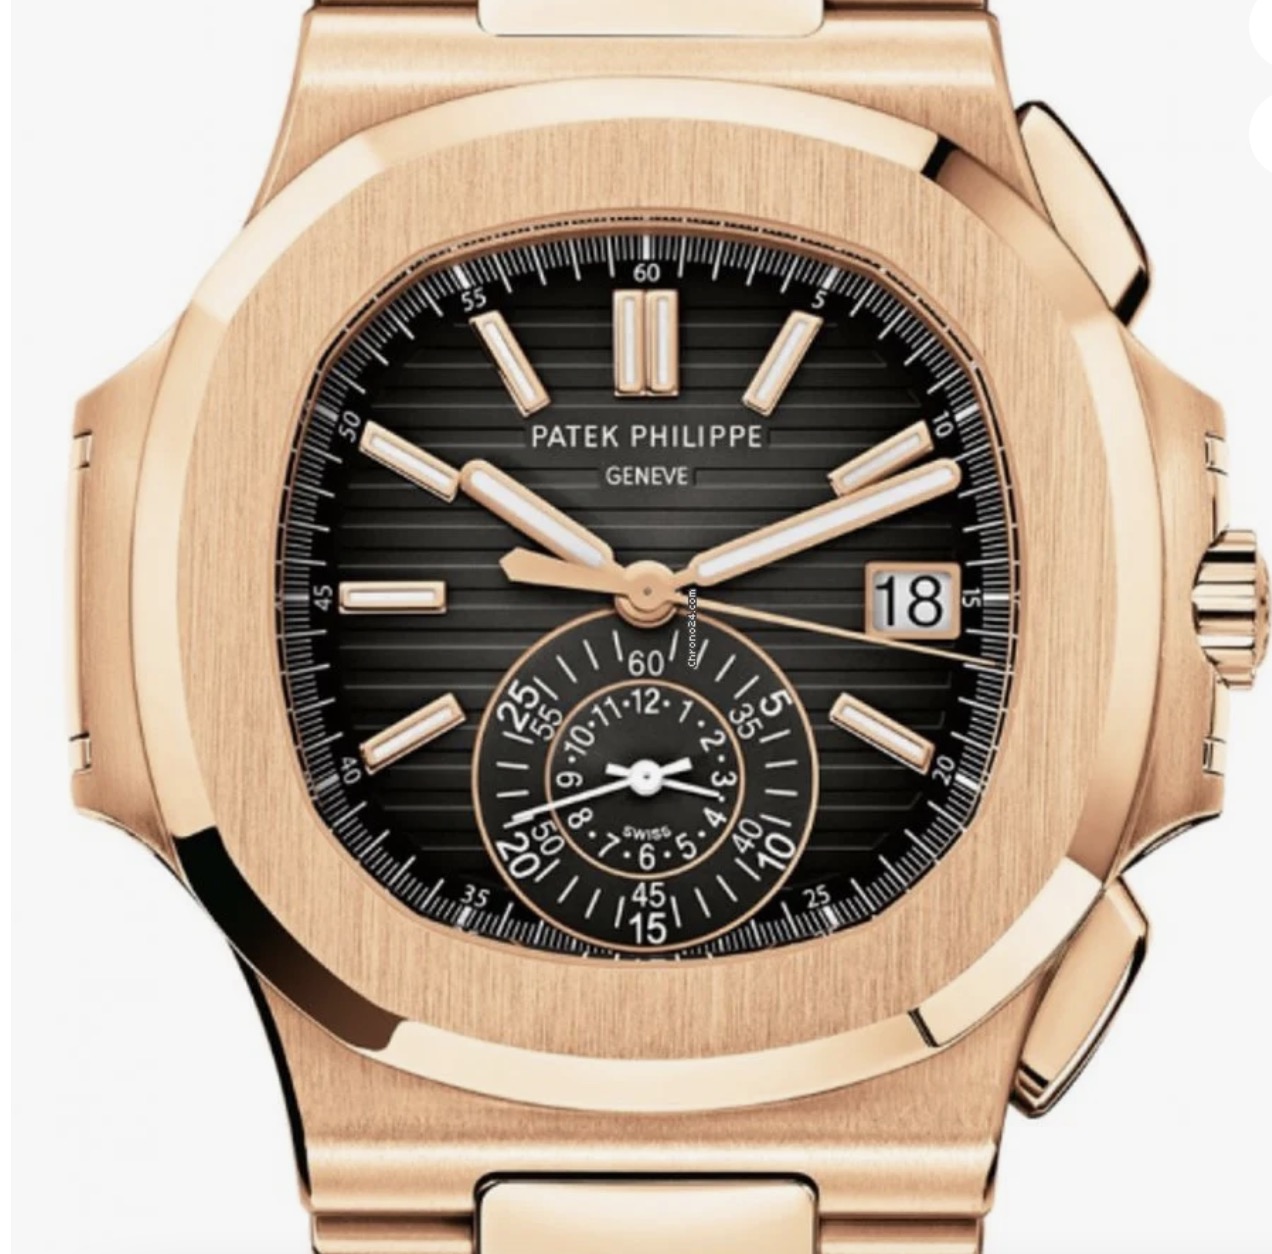 Patek Philippe Nautilus 5980/1R-001 replica watch